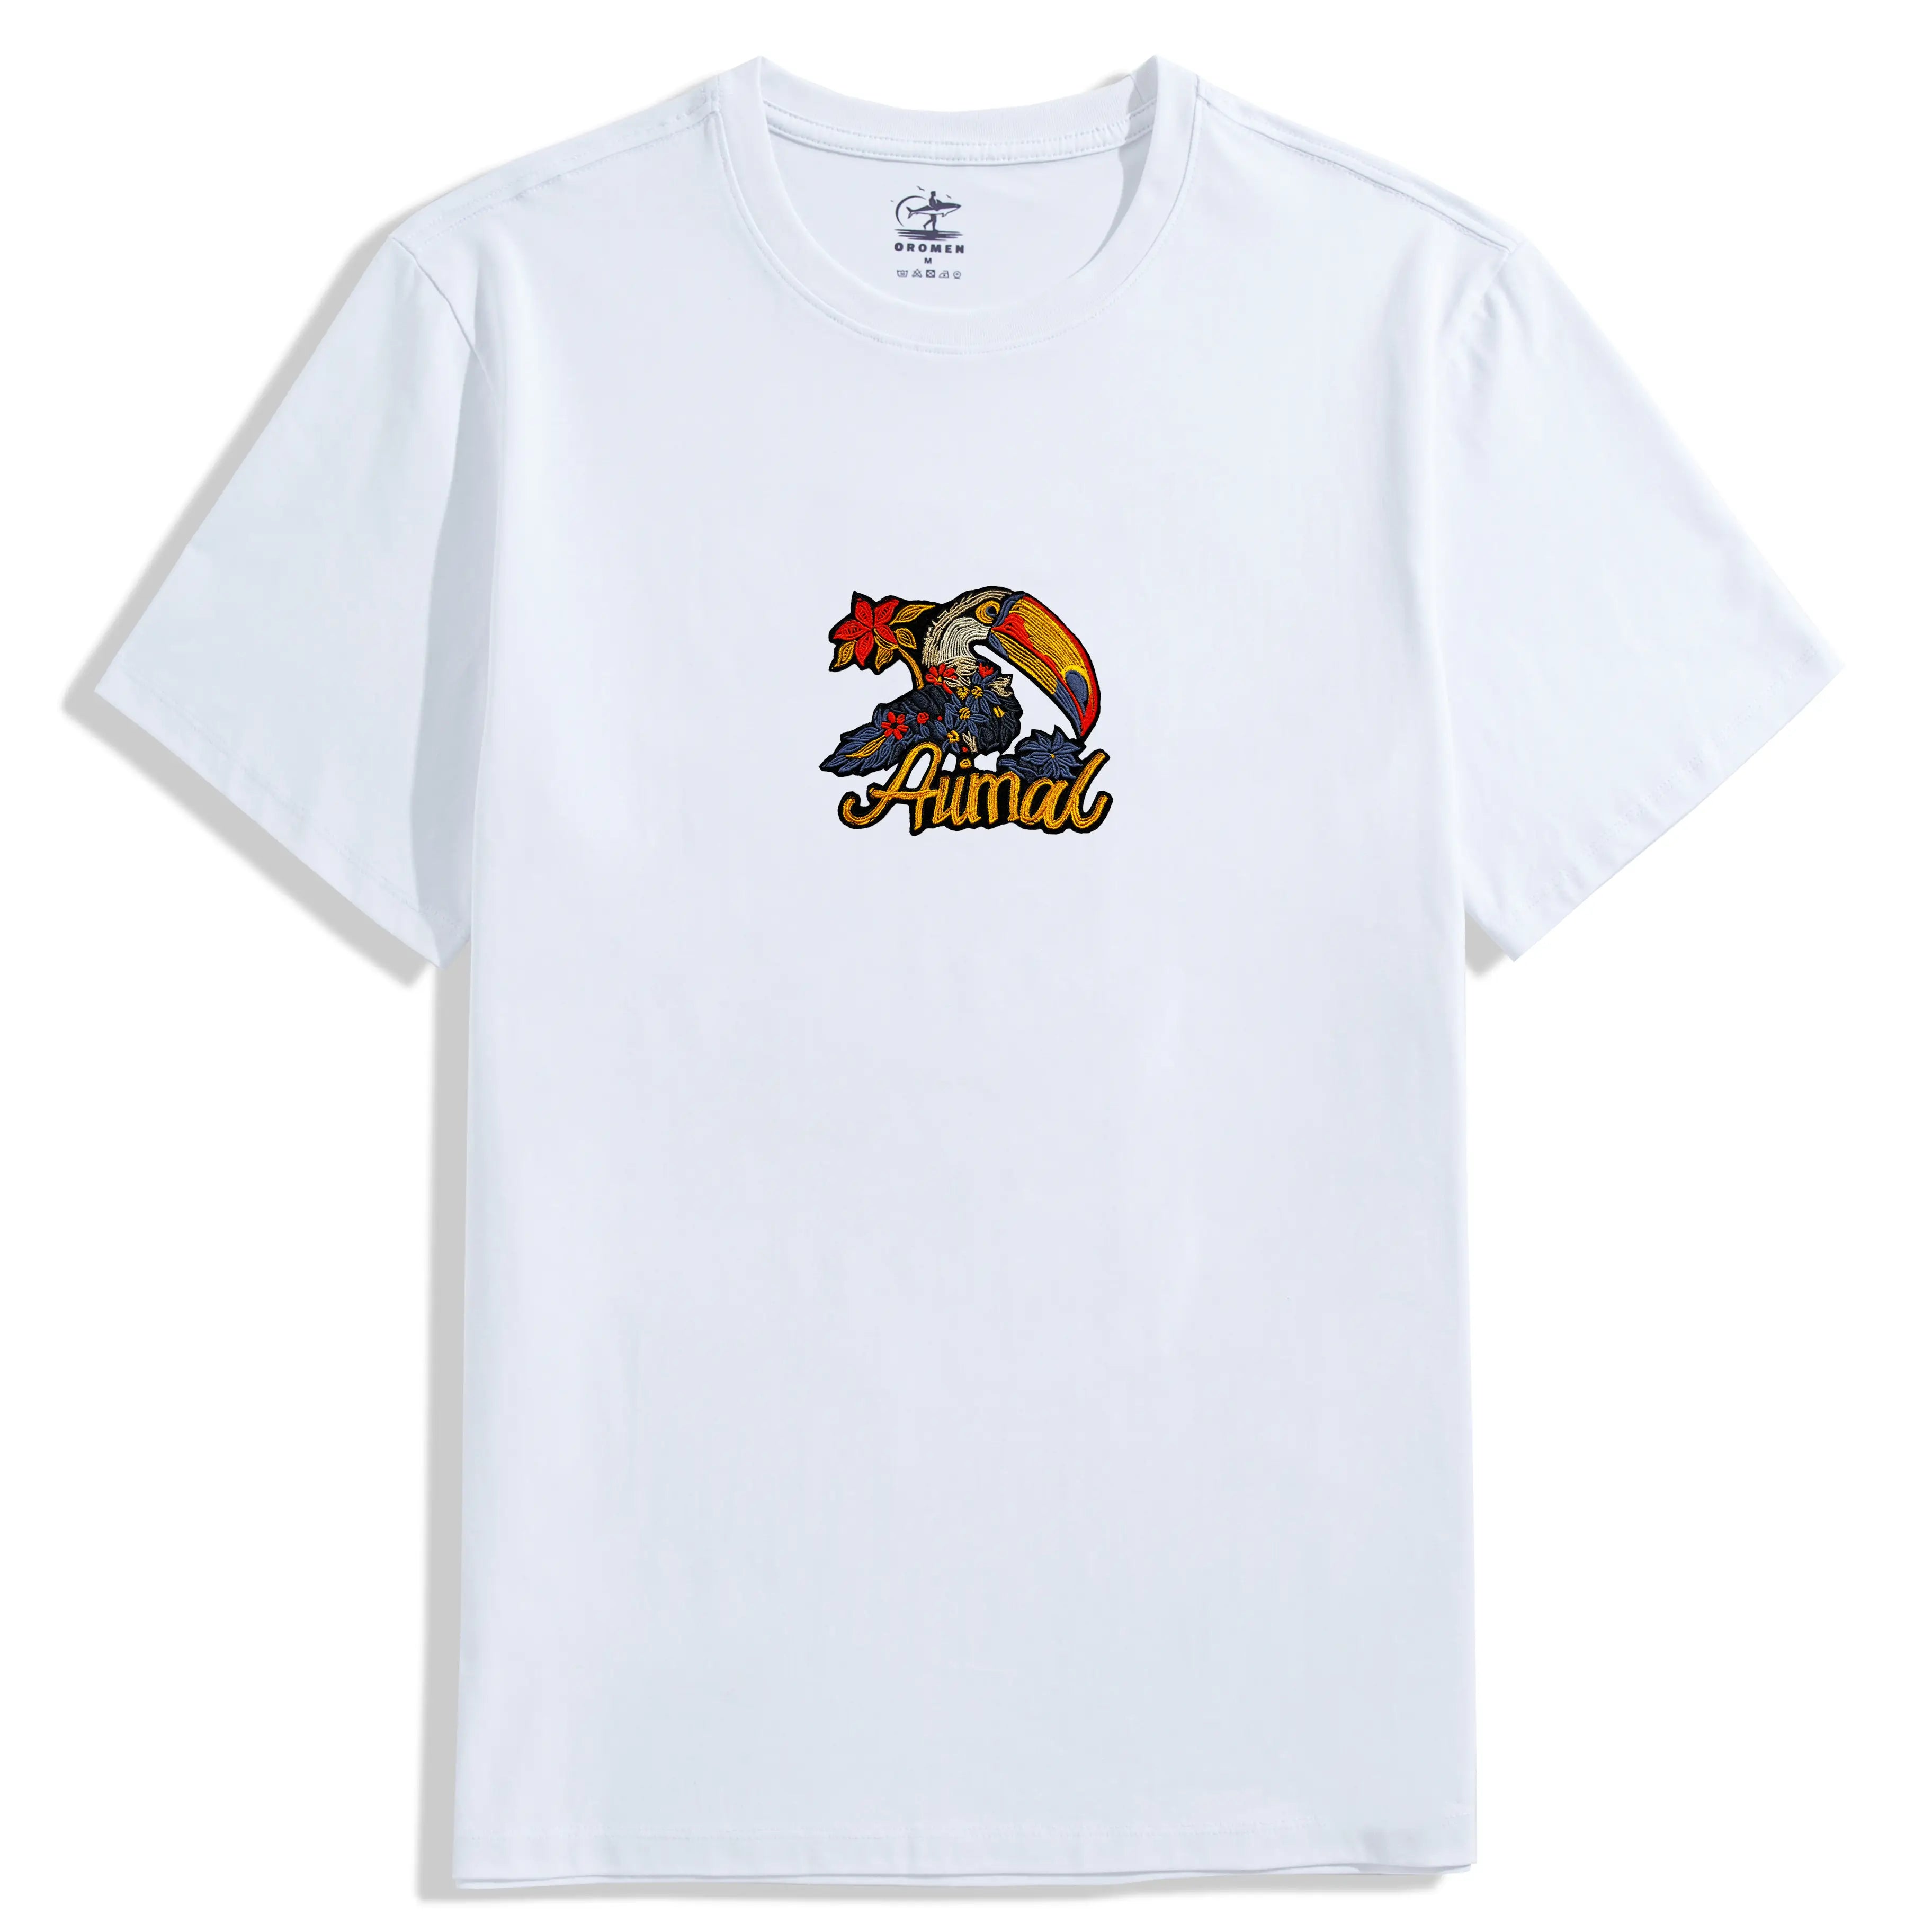 Pelicans Cotton T-shirt White Color